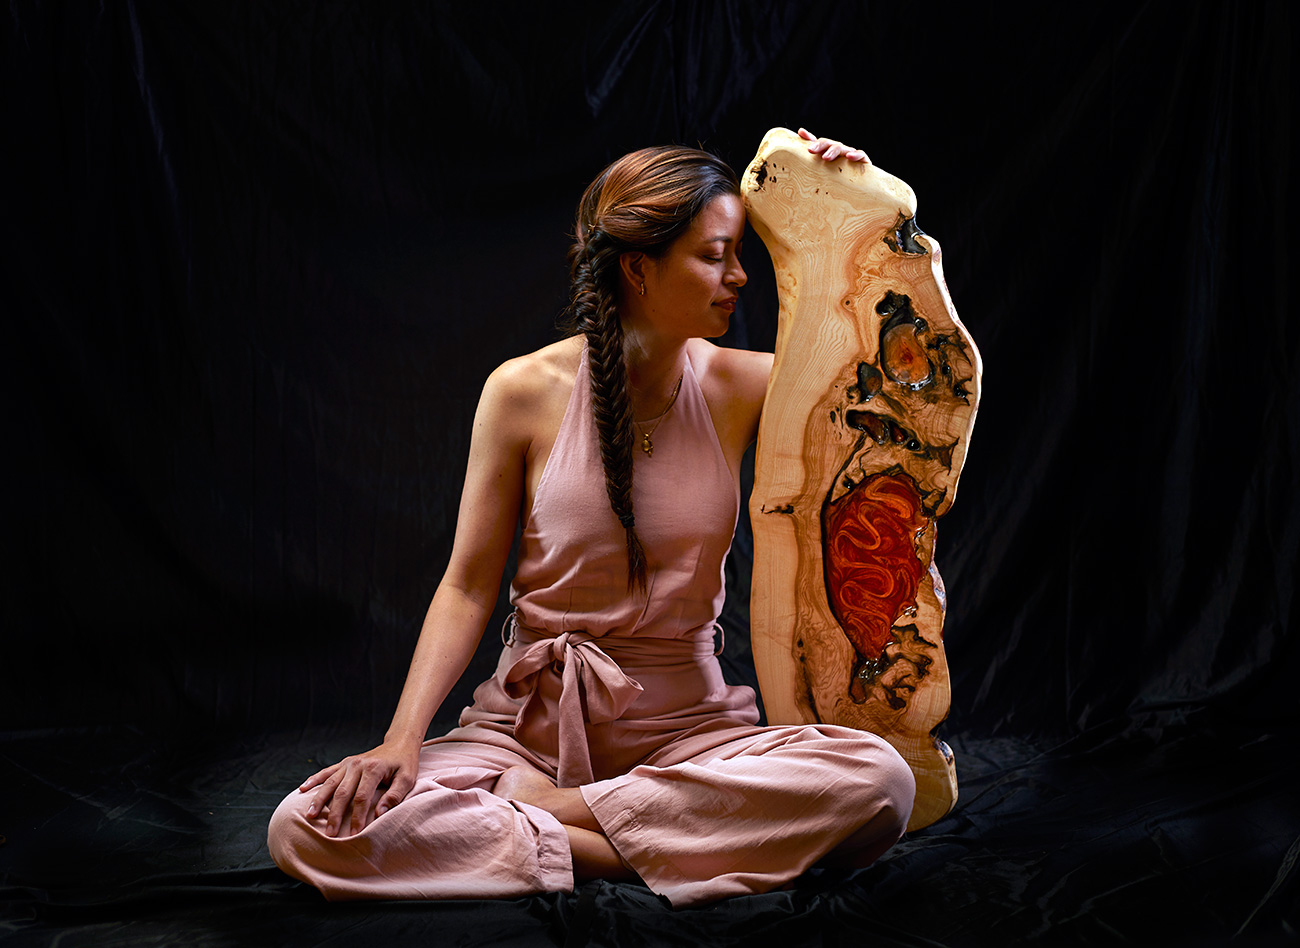 Mujer contemplativa junto a una impresionante obra de arte en madera y resina, reflejando la conexión entre el arte y el espectador